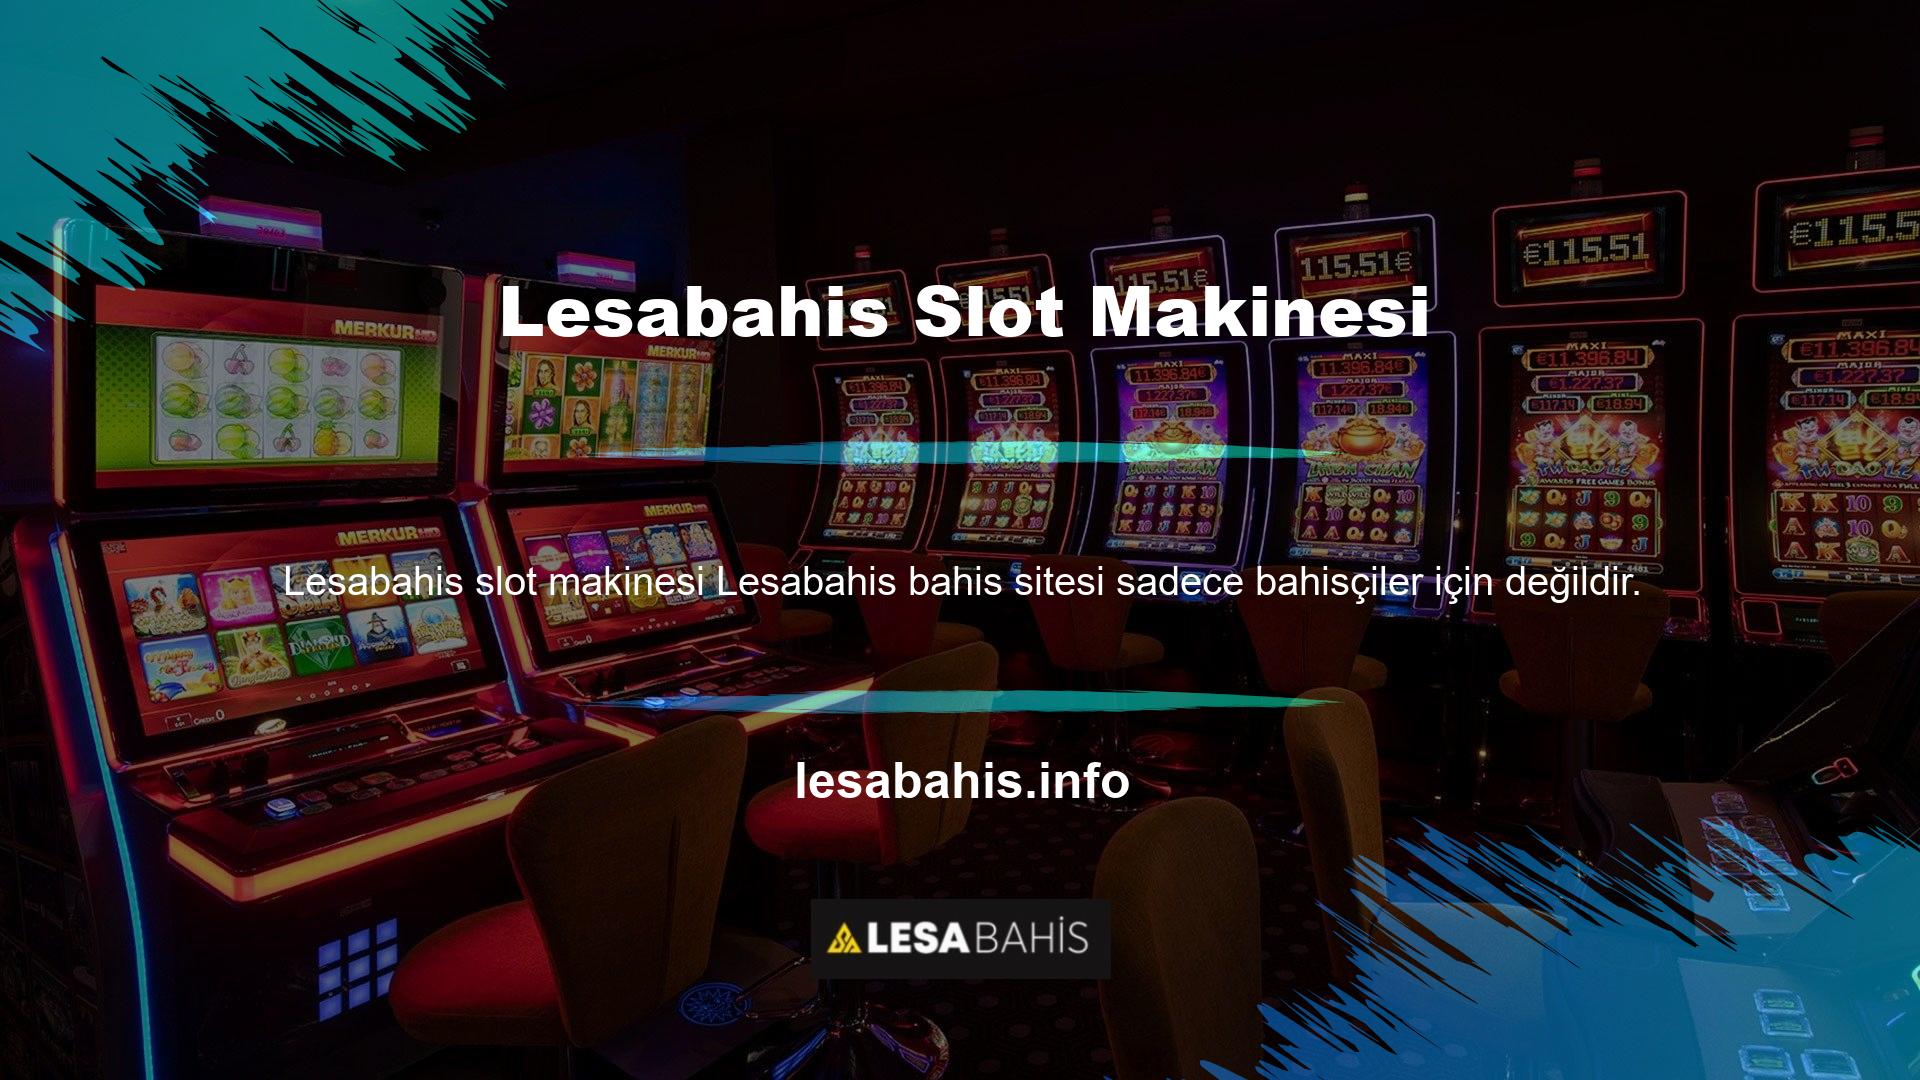 Casino oyuncuları, bingo oyuncuları ve slot oyuncuları da bu web sitesinde vakit geçirebilirler